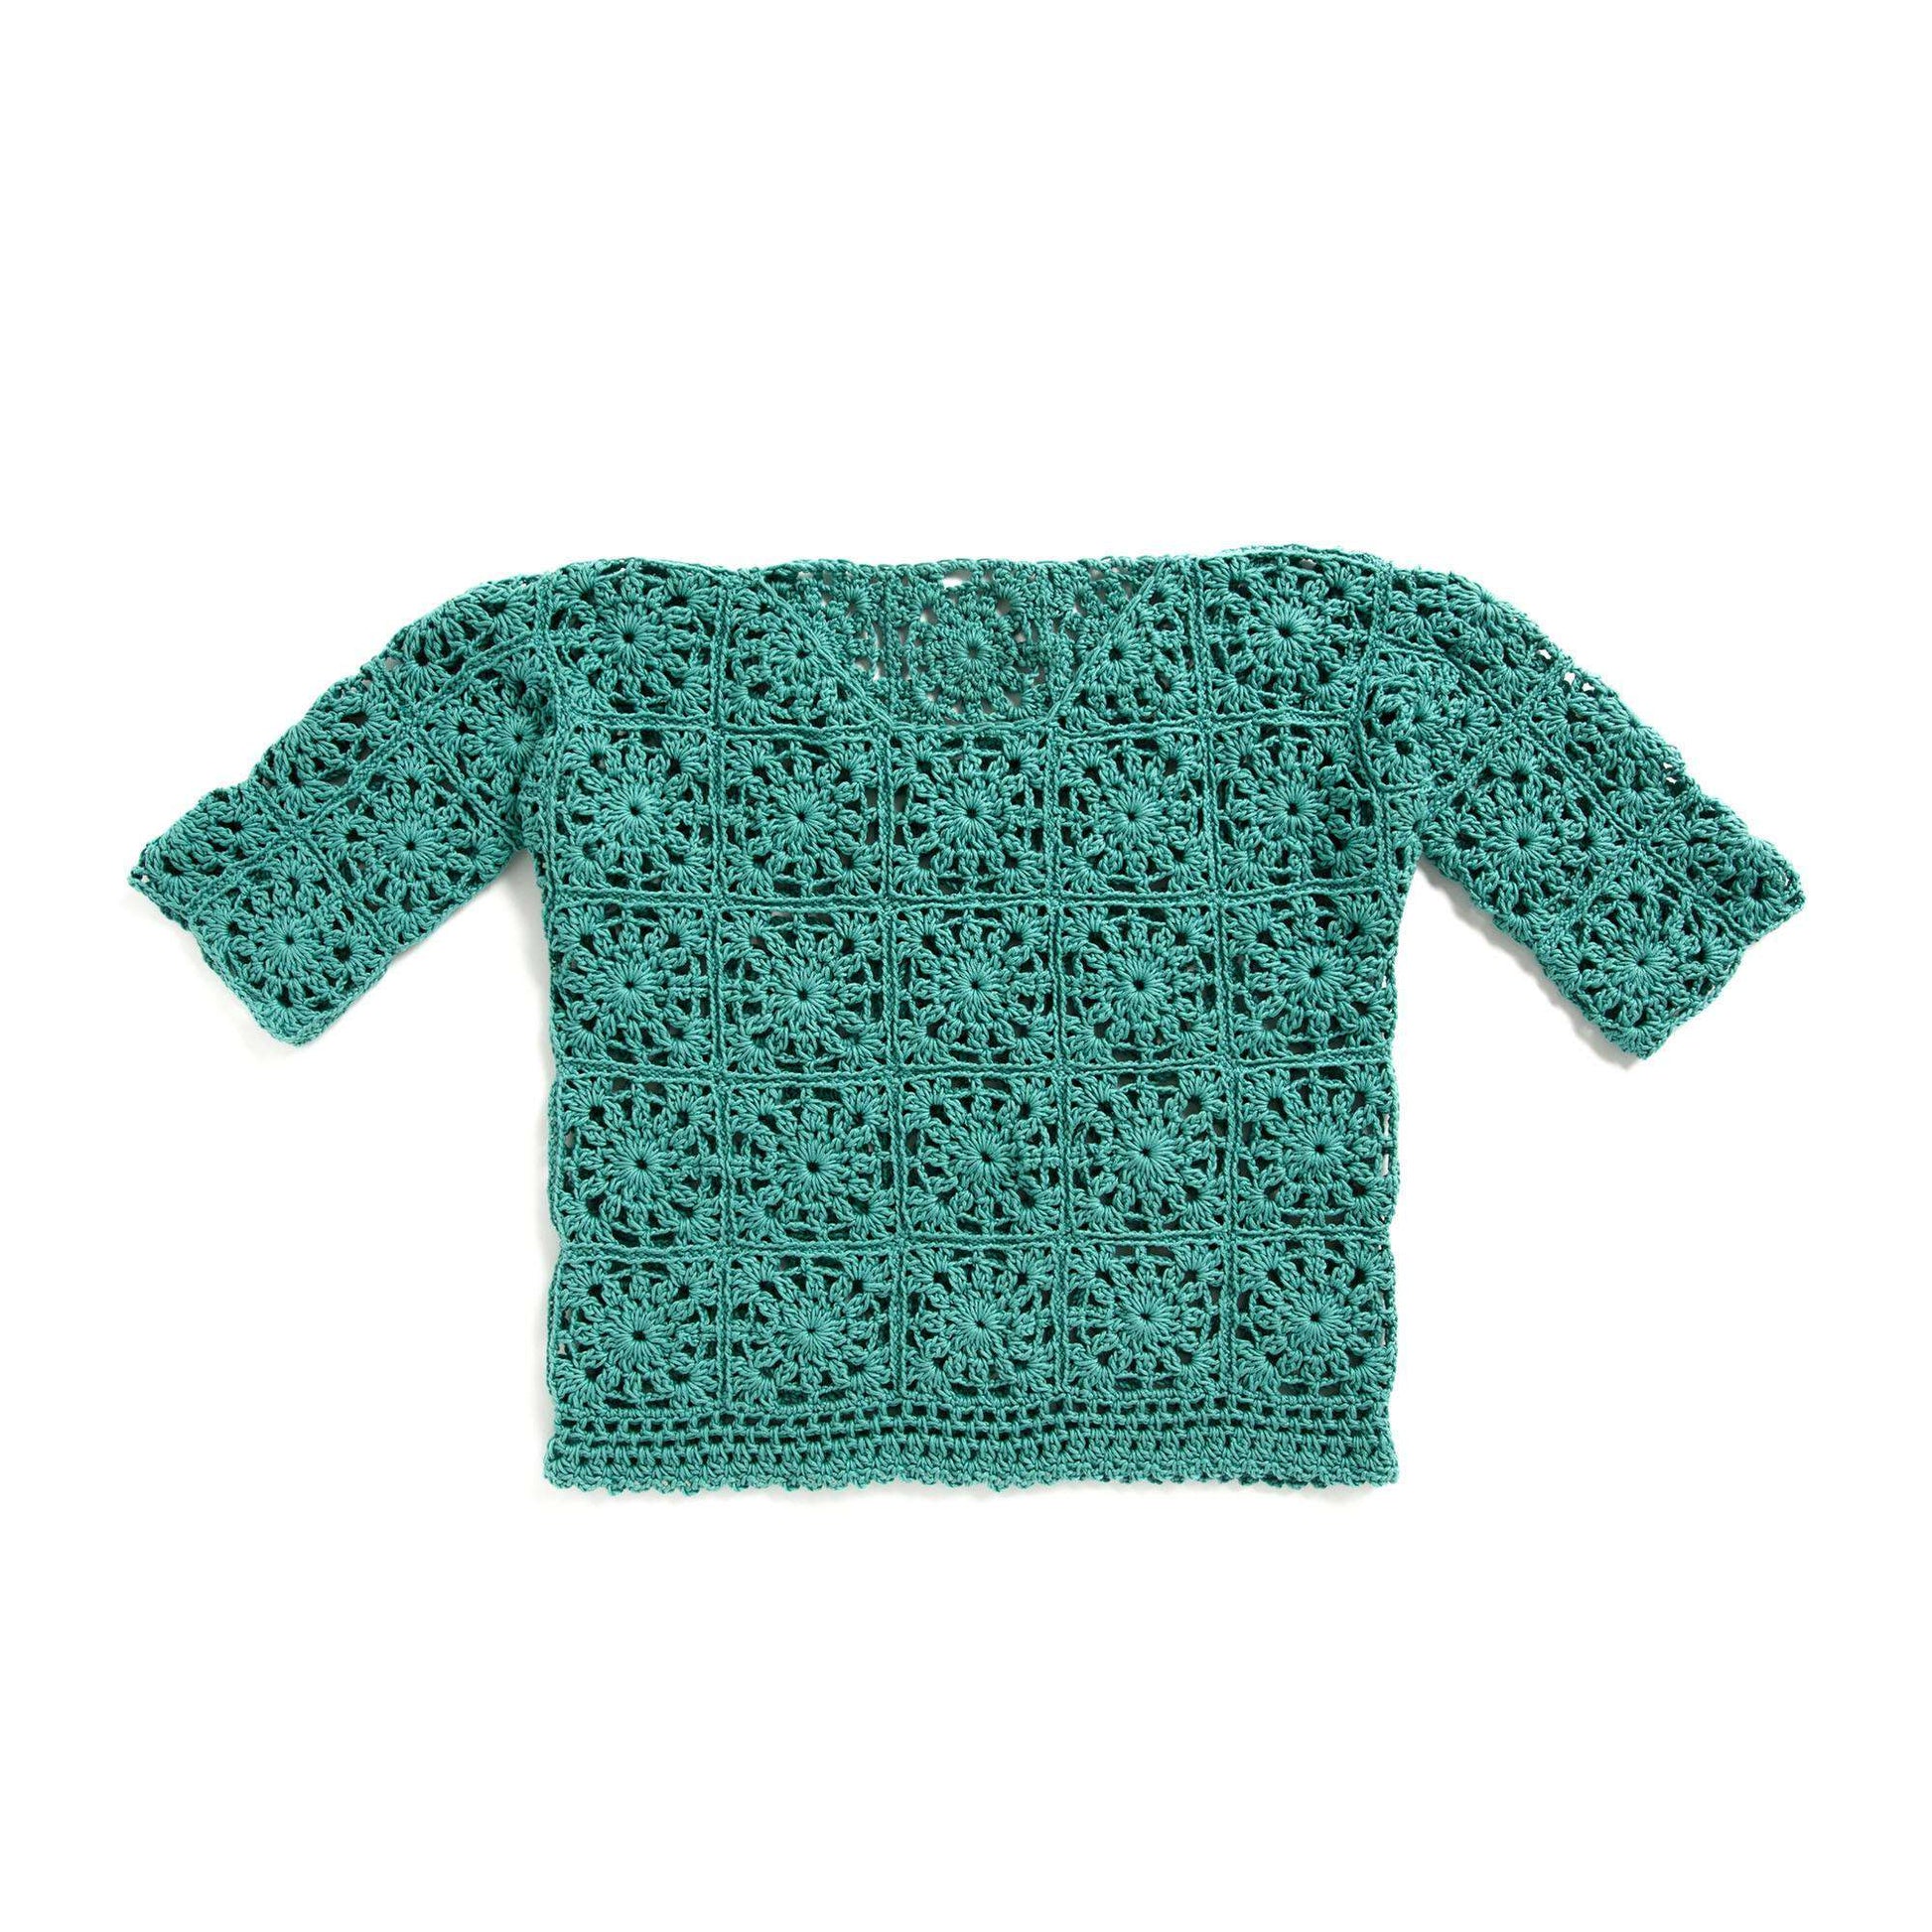 Free Bernat Crochet Lacy Motif Top Pattern